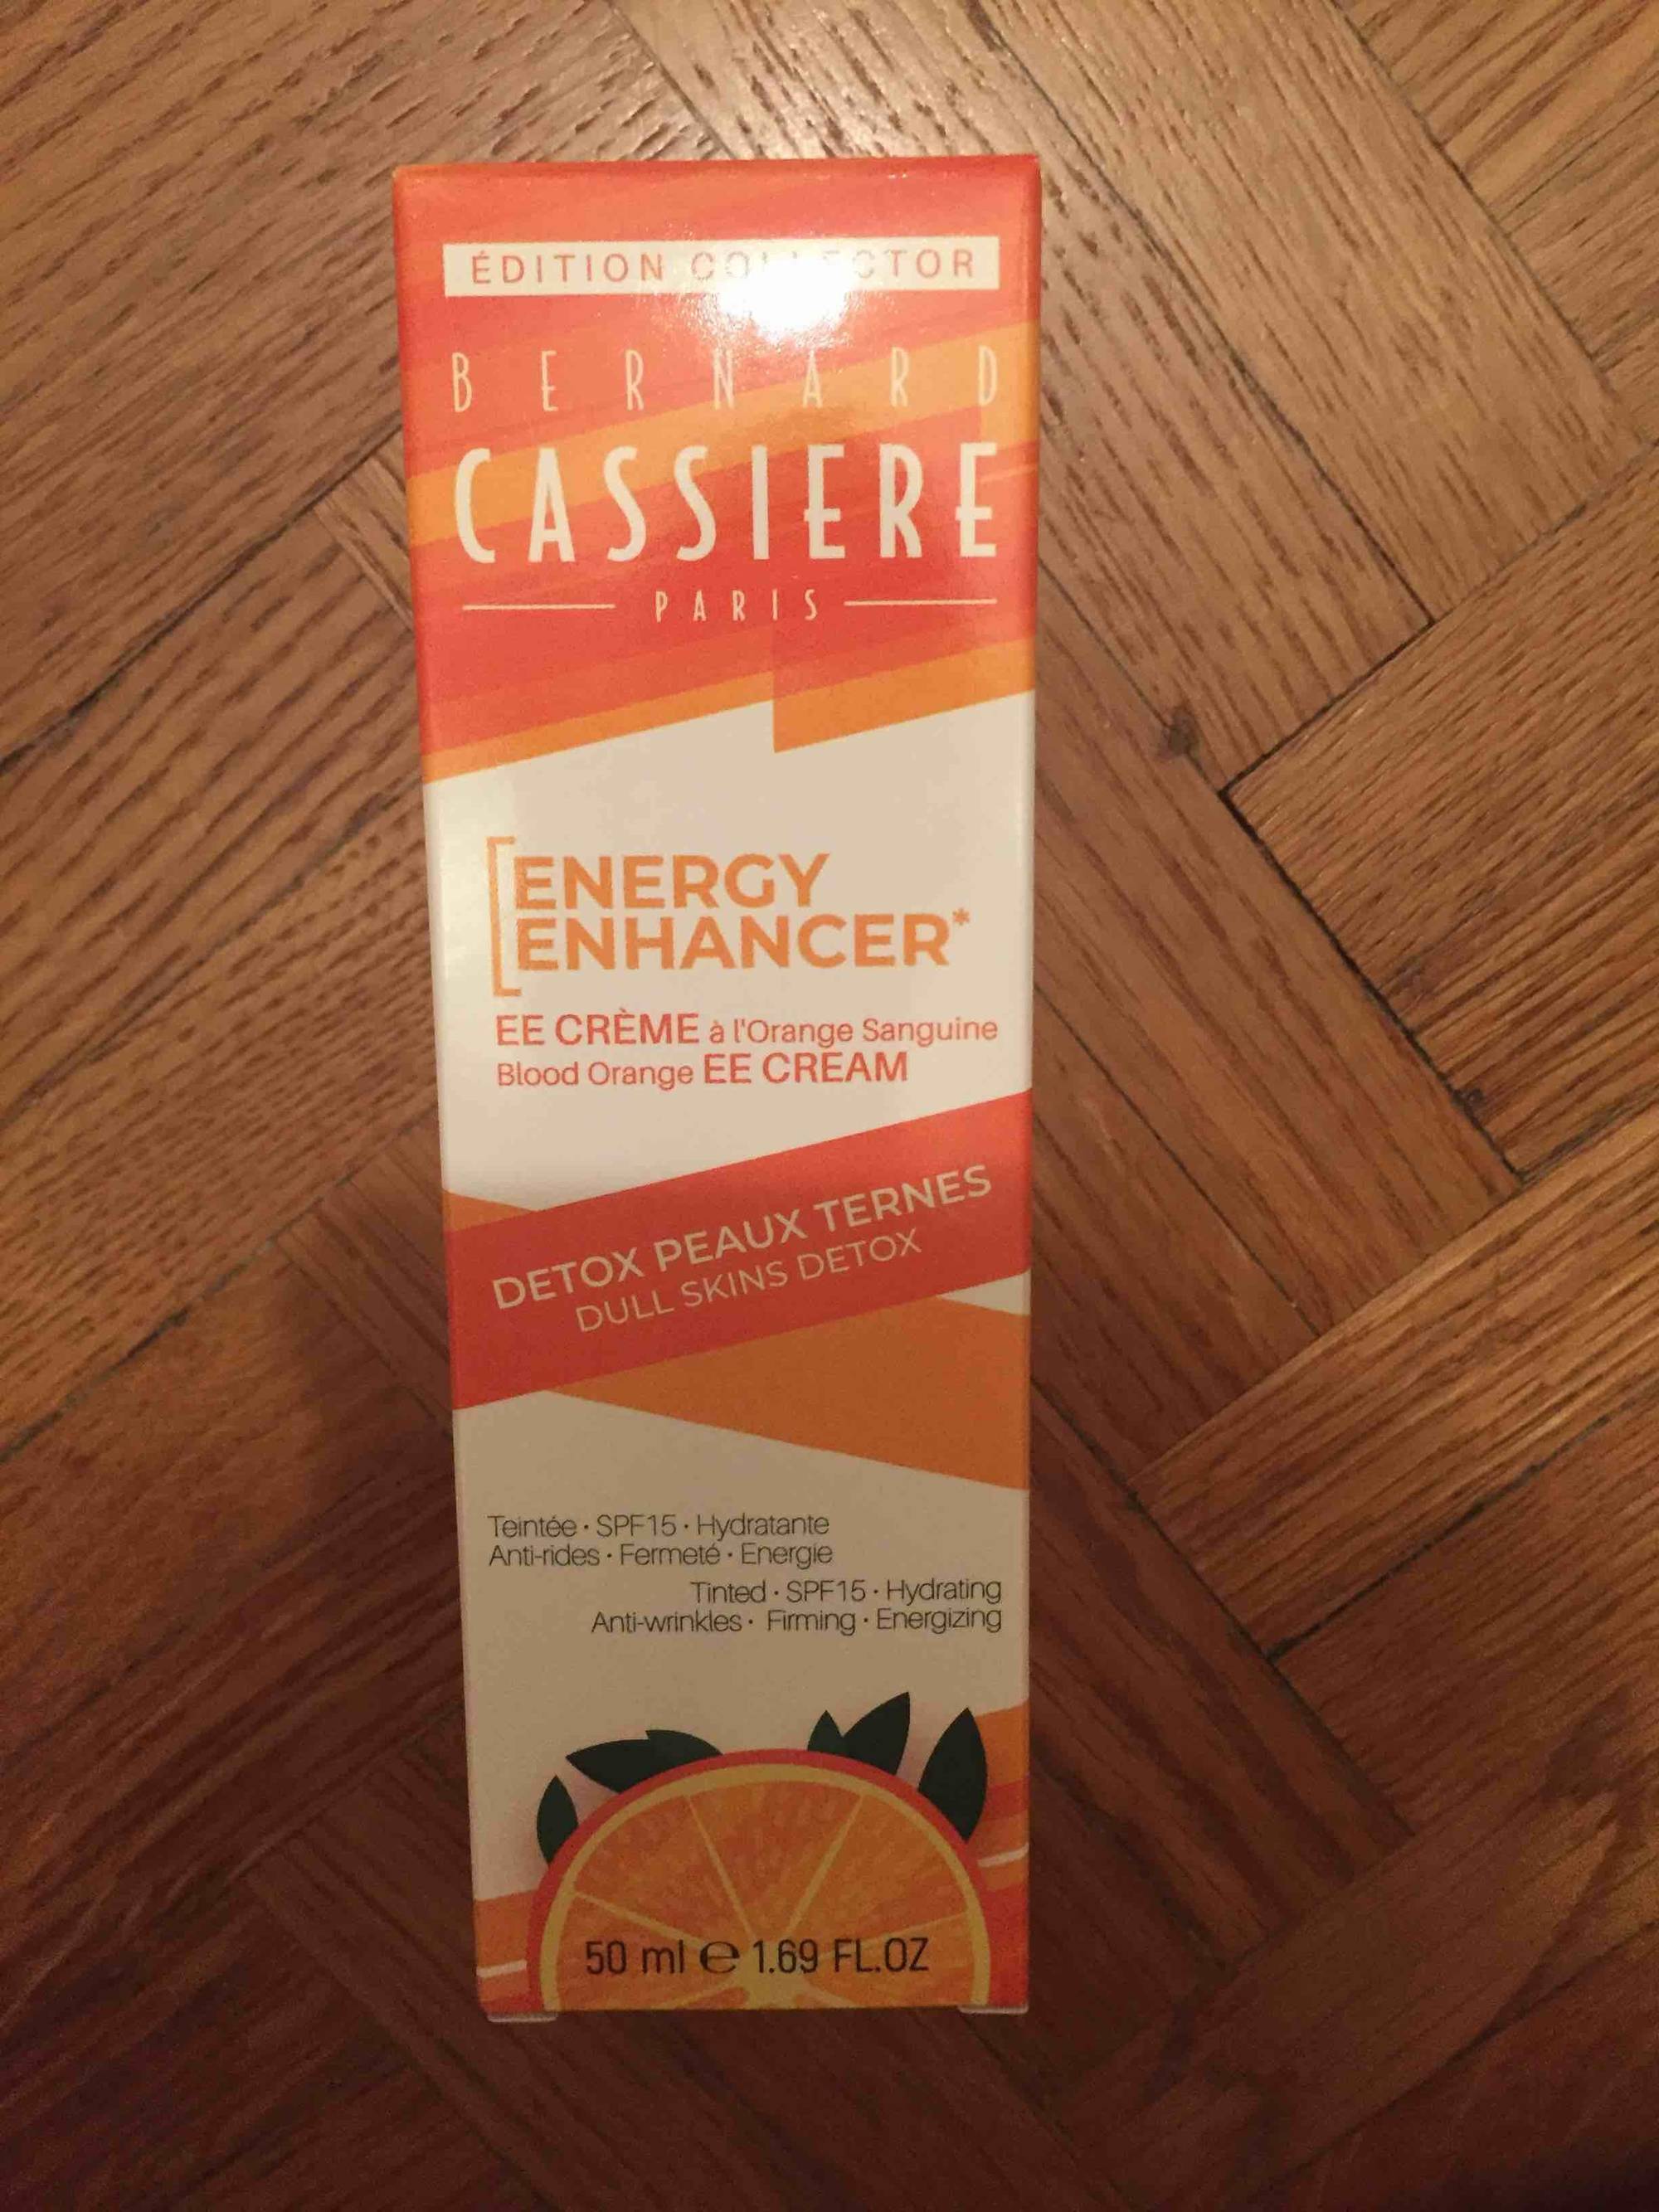 BERNARD CASSIÈRE - Energy enhancer - EE Crème à l'orange sanguine SPF 15